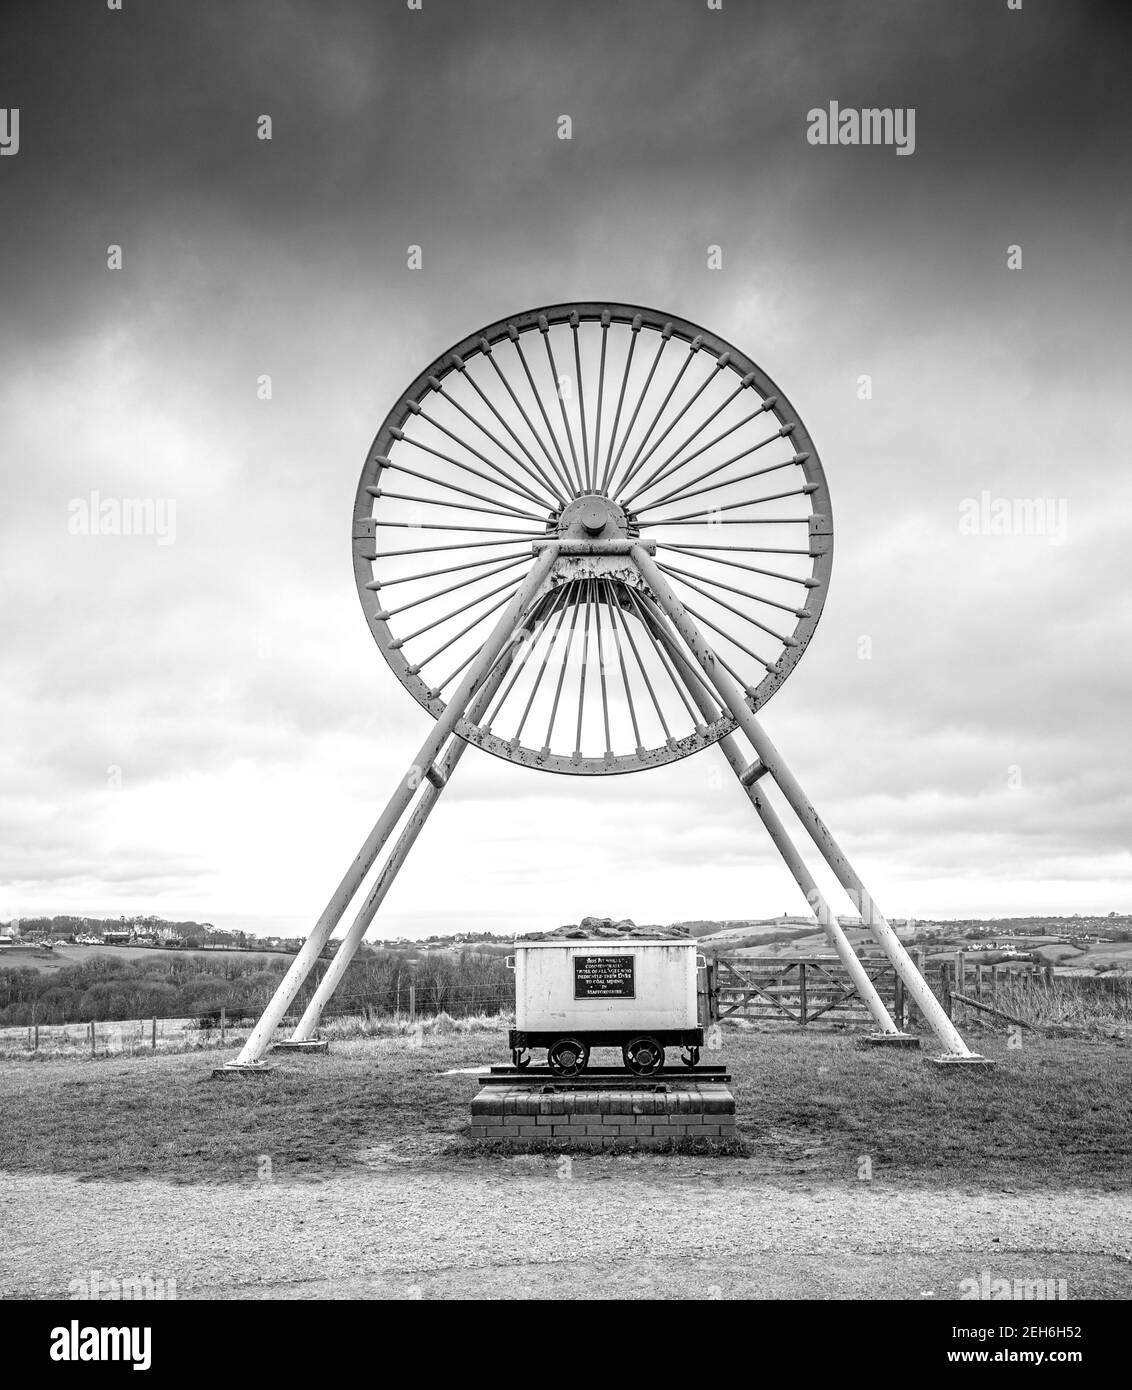 Le parc régional Apedale et le musée minier avec une roue à mine dans le Staffordshire du Nord, en Angleterre, au Royaume-Uni - un site historique de l'exploitation minière du charbon Banque D'Images